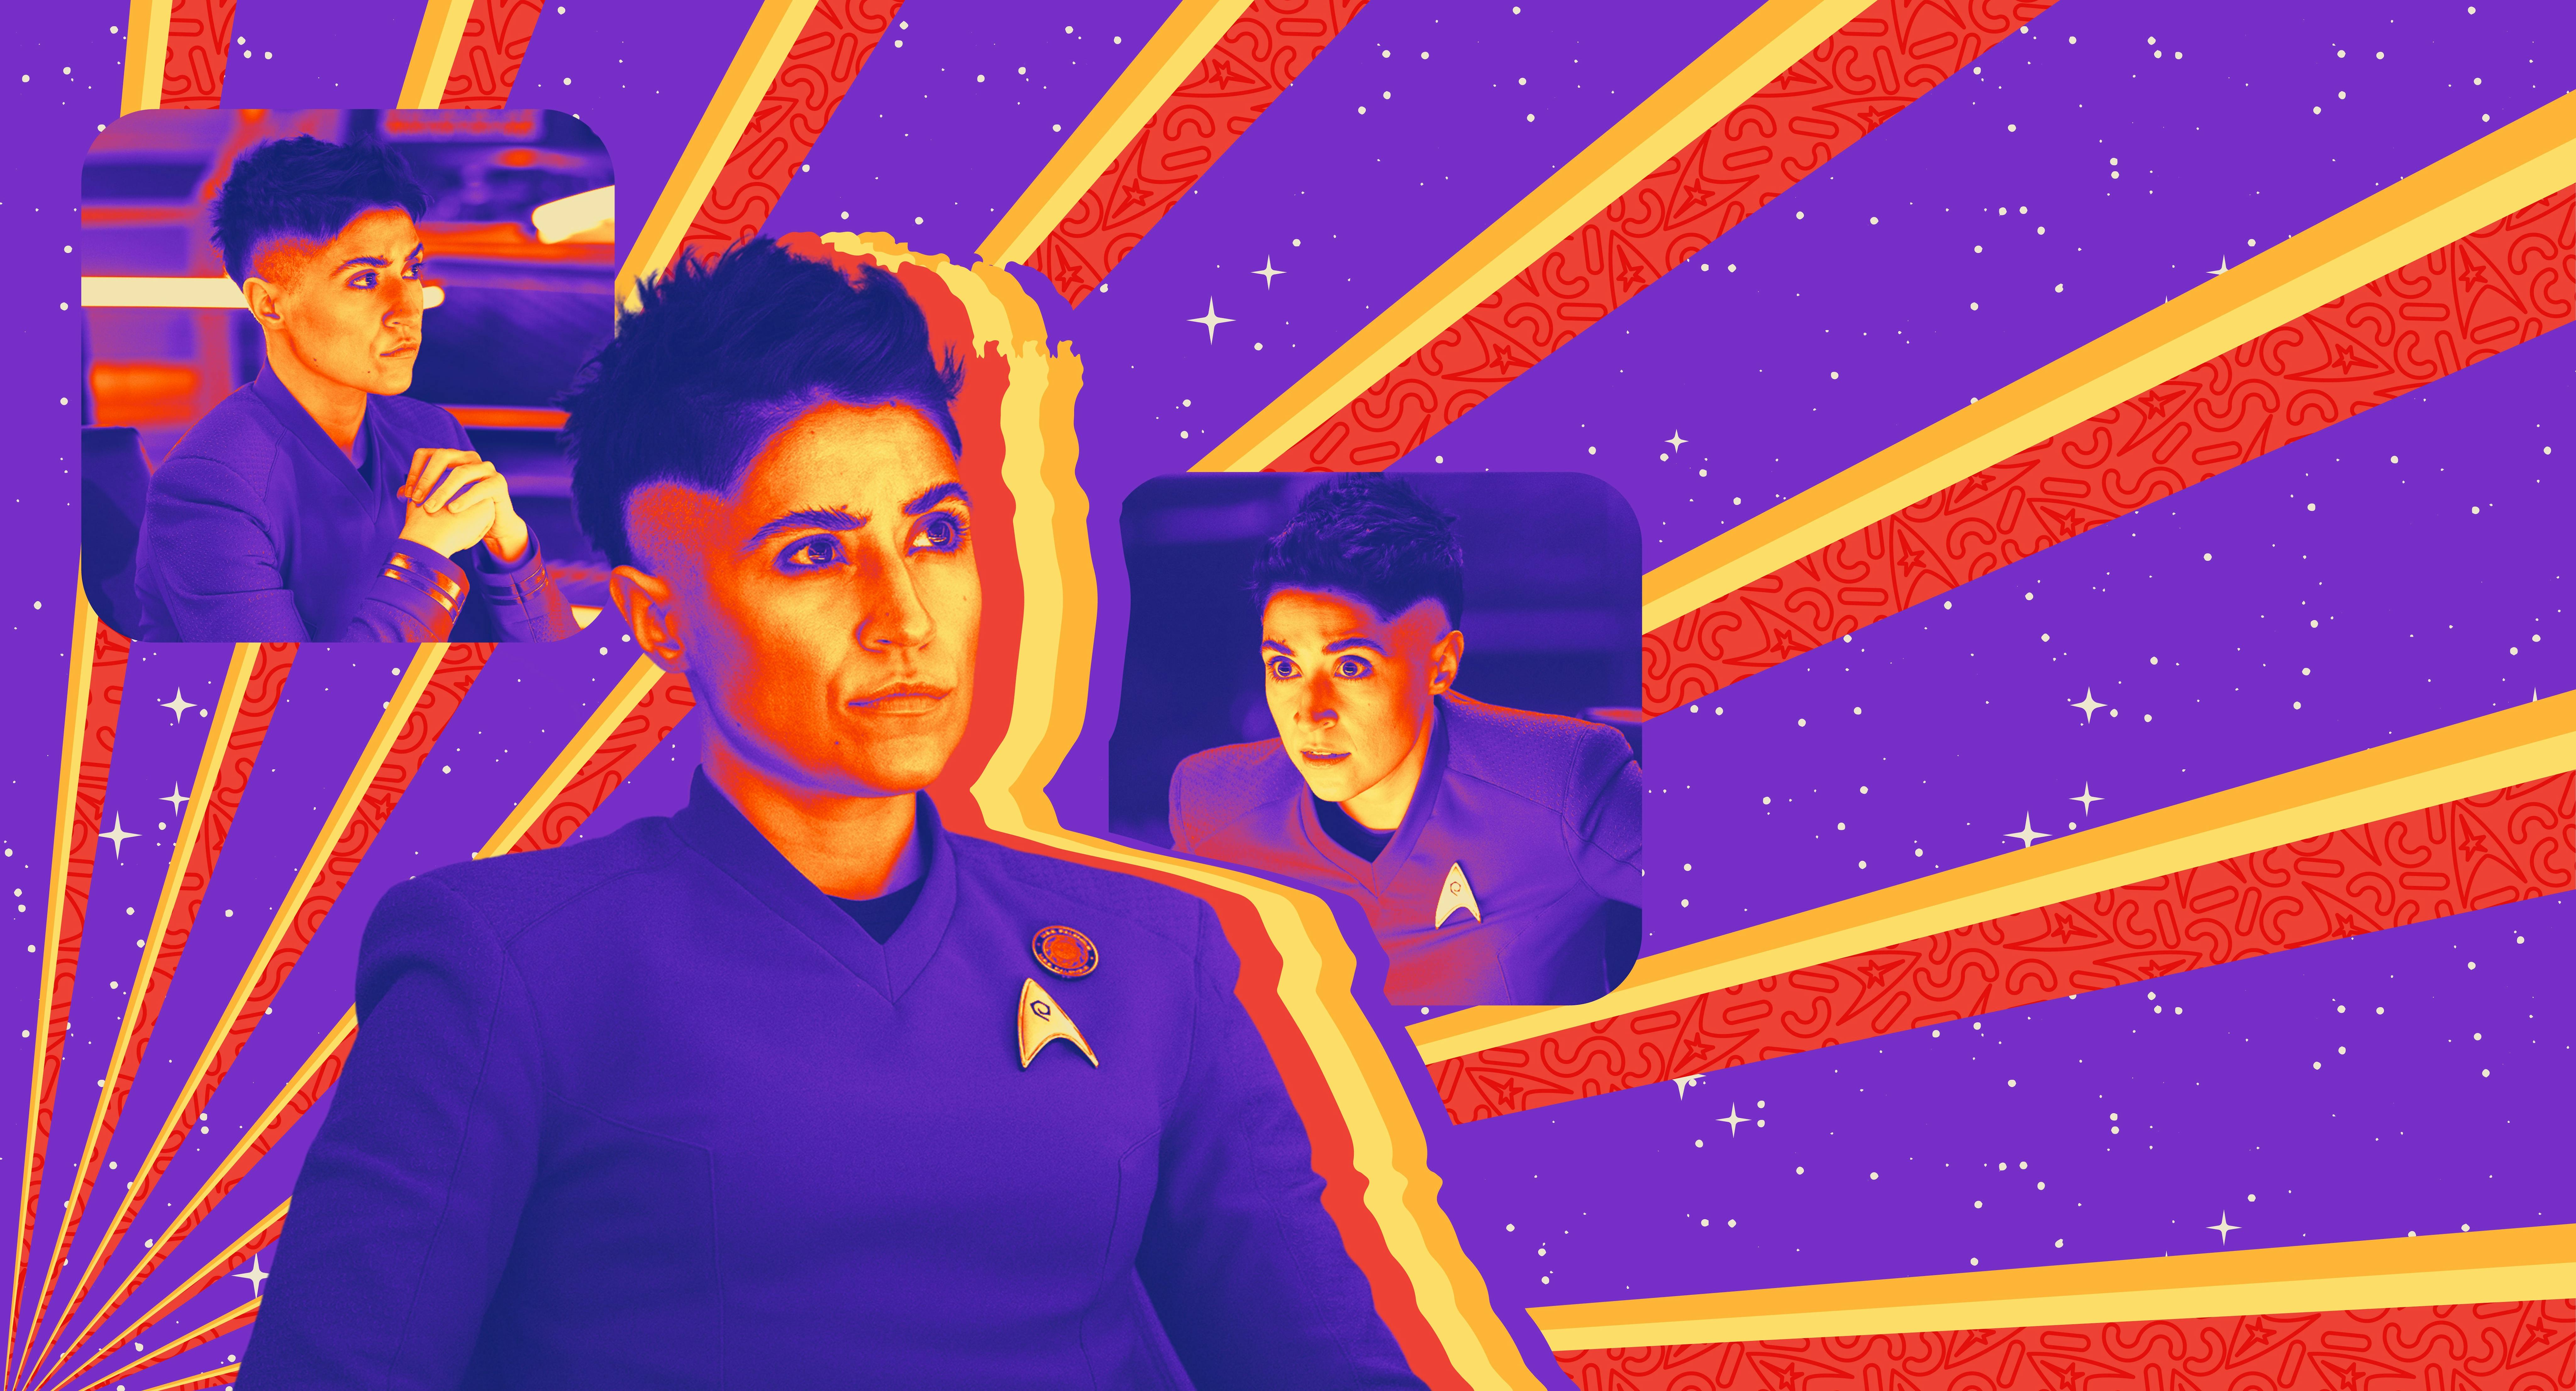 Illustrated banner for Lt. Erica Ortegas from Star Trek: Strange New Worlds